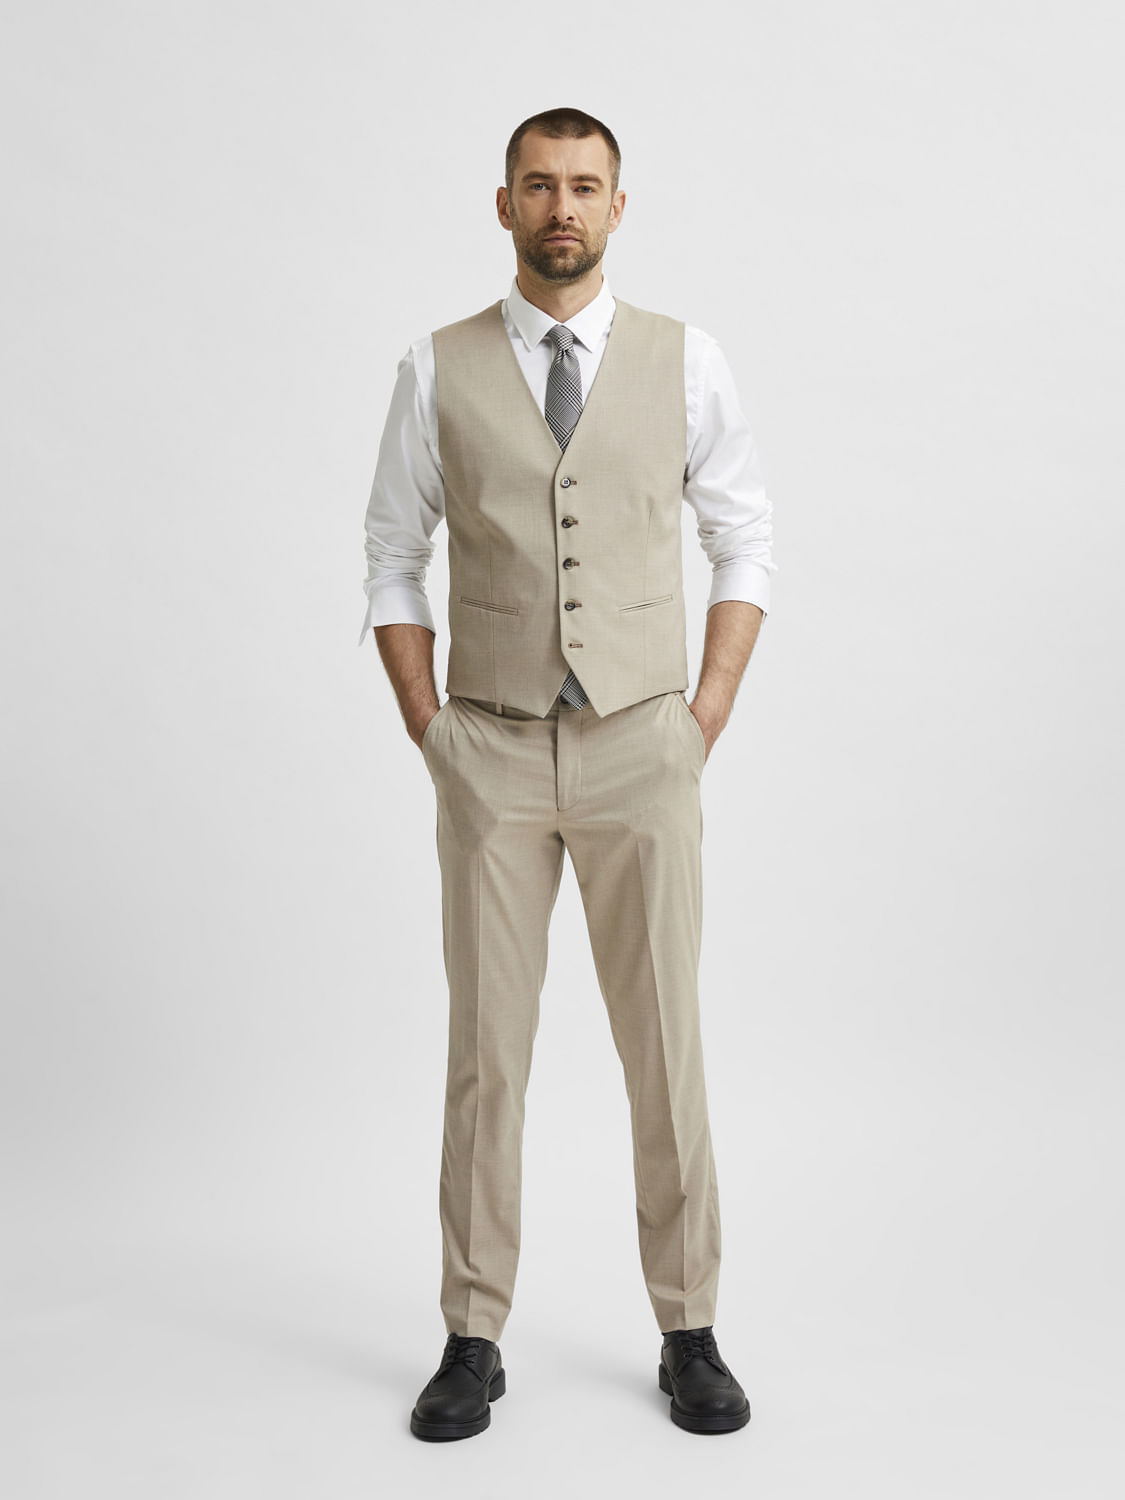 Buy Men Linen Vest Pant Groomsmen Suit Linen Ivory Suit Men Online in India   Etsy